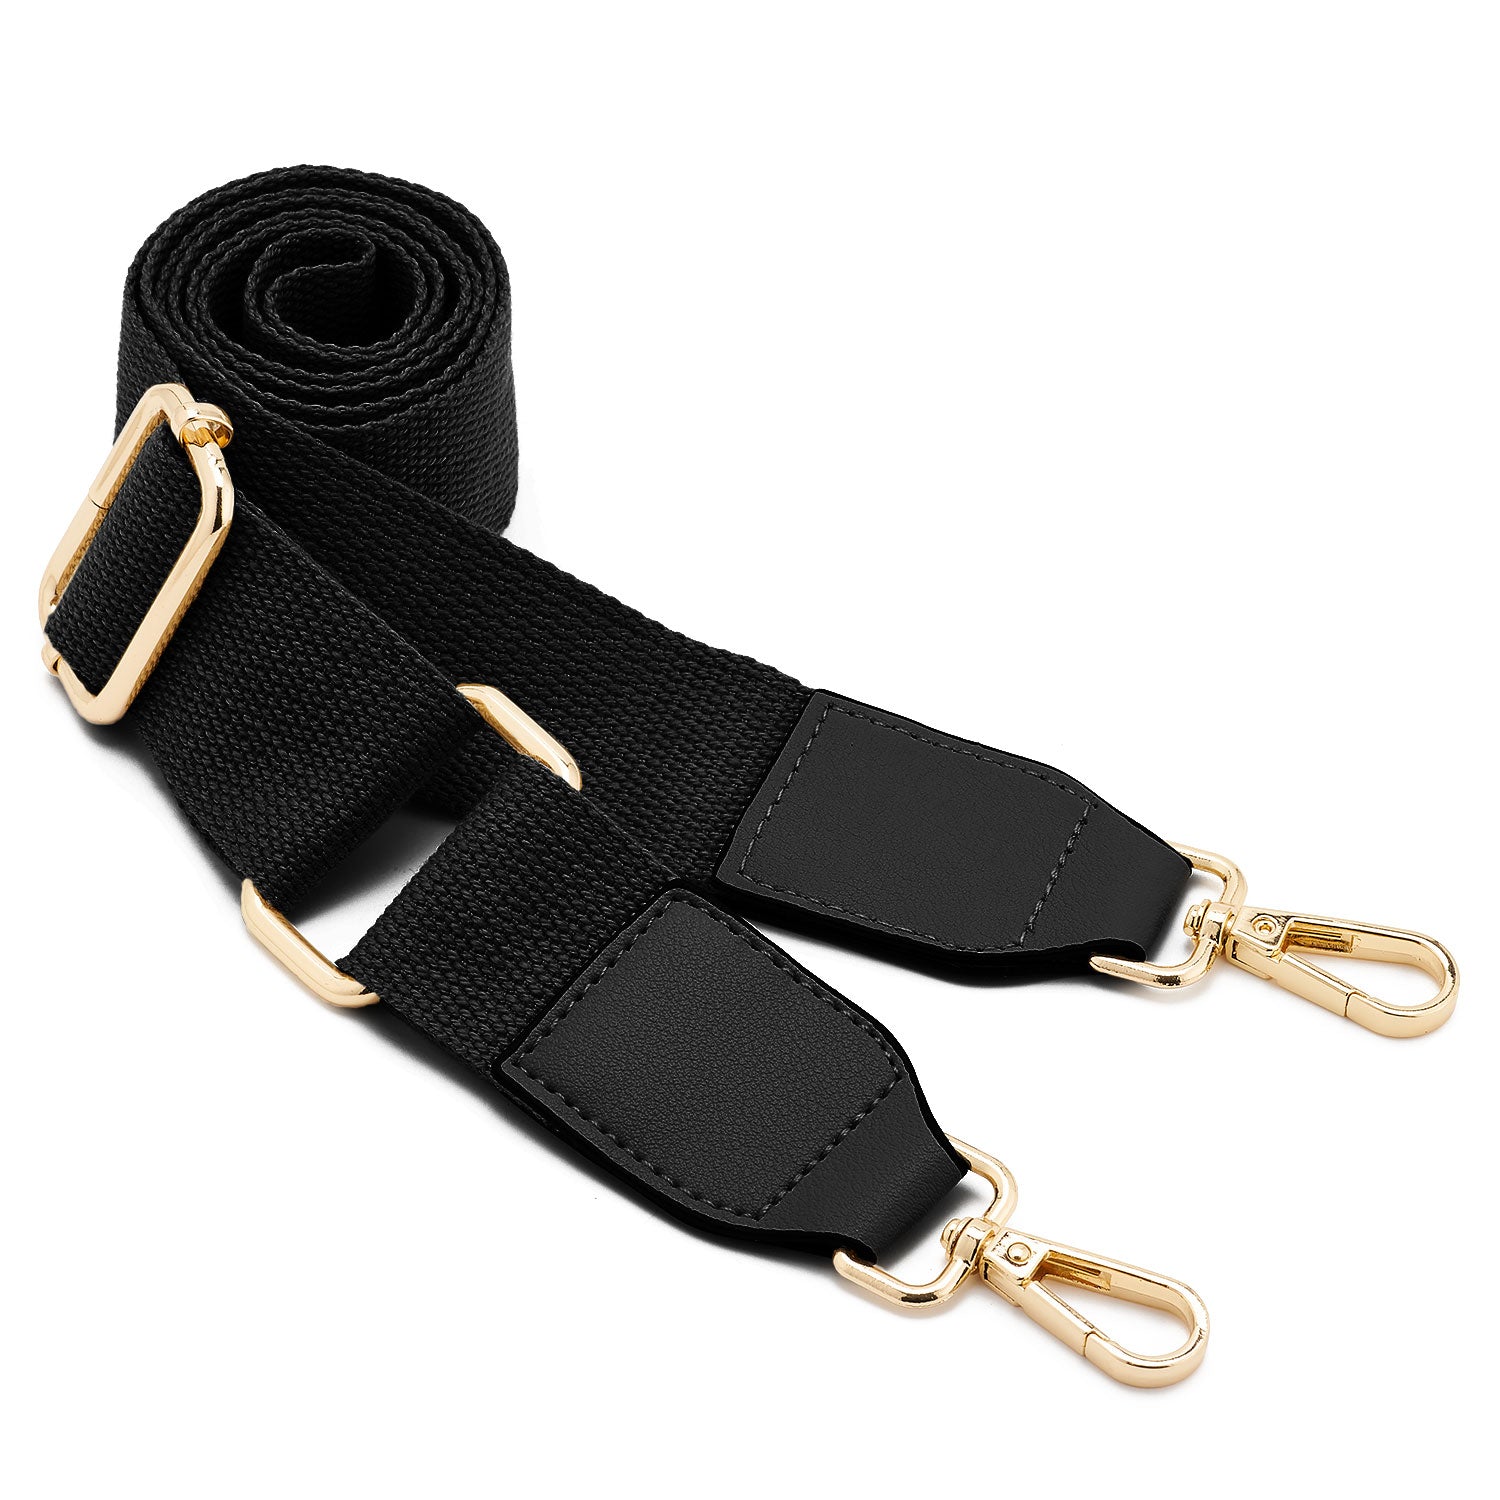 Multi Pochette Accessories Replacement Strap Adjustable Crossbody Wide Cavas Luggage Strap for Shoulder Bags Multi Purpose Strap (Black)